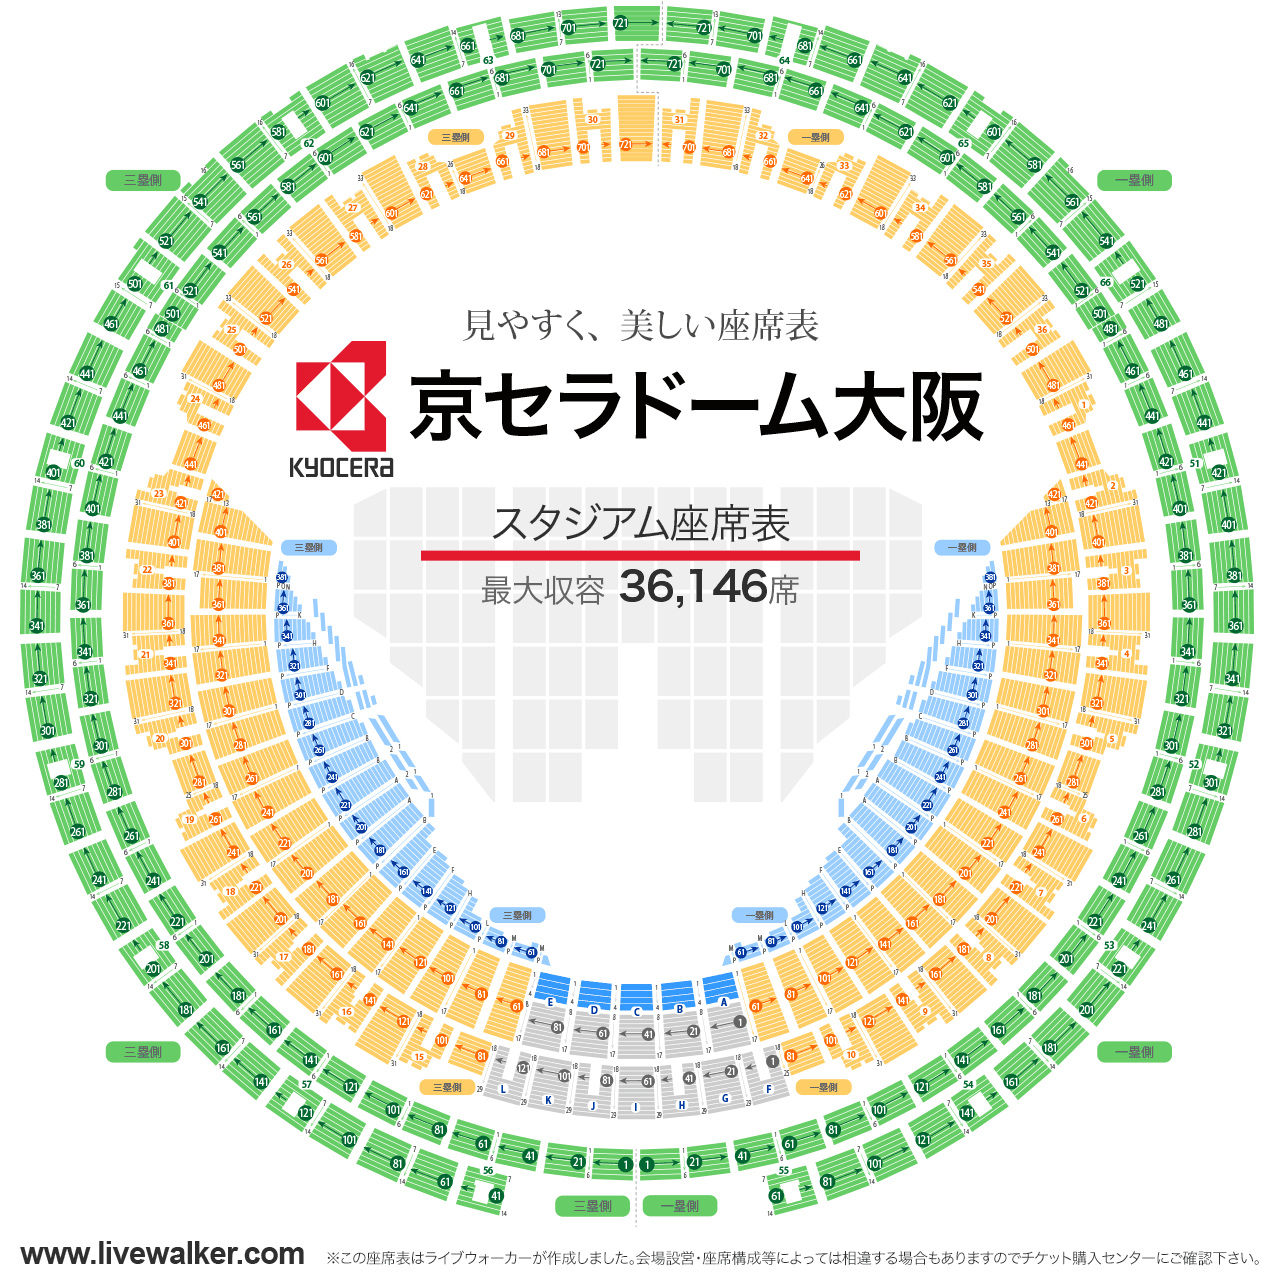 京セラドーム大阪スタジアムの座席表